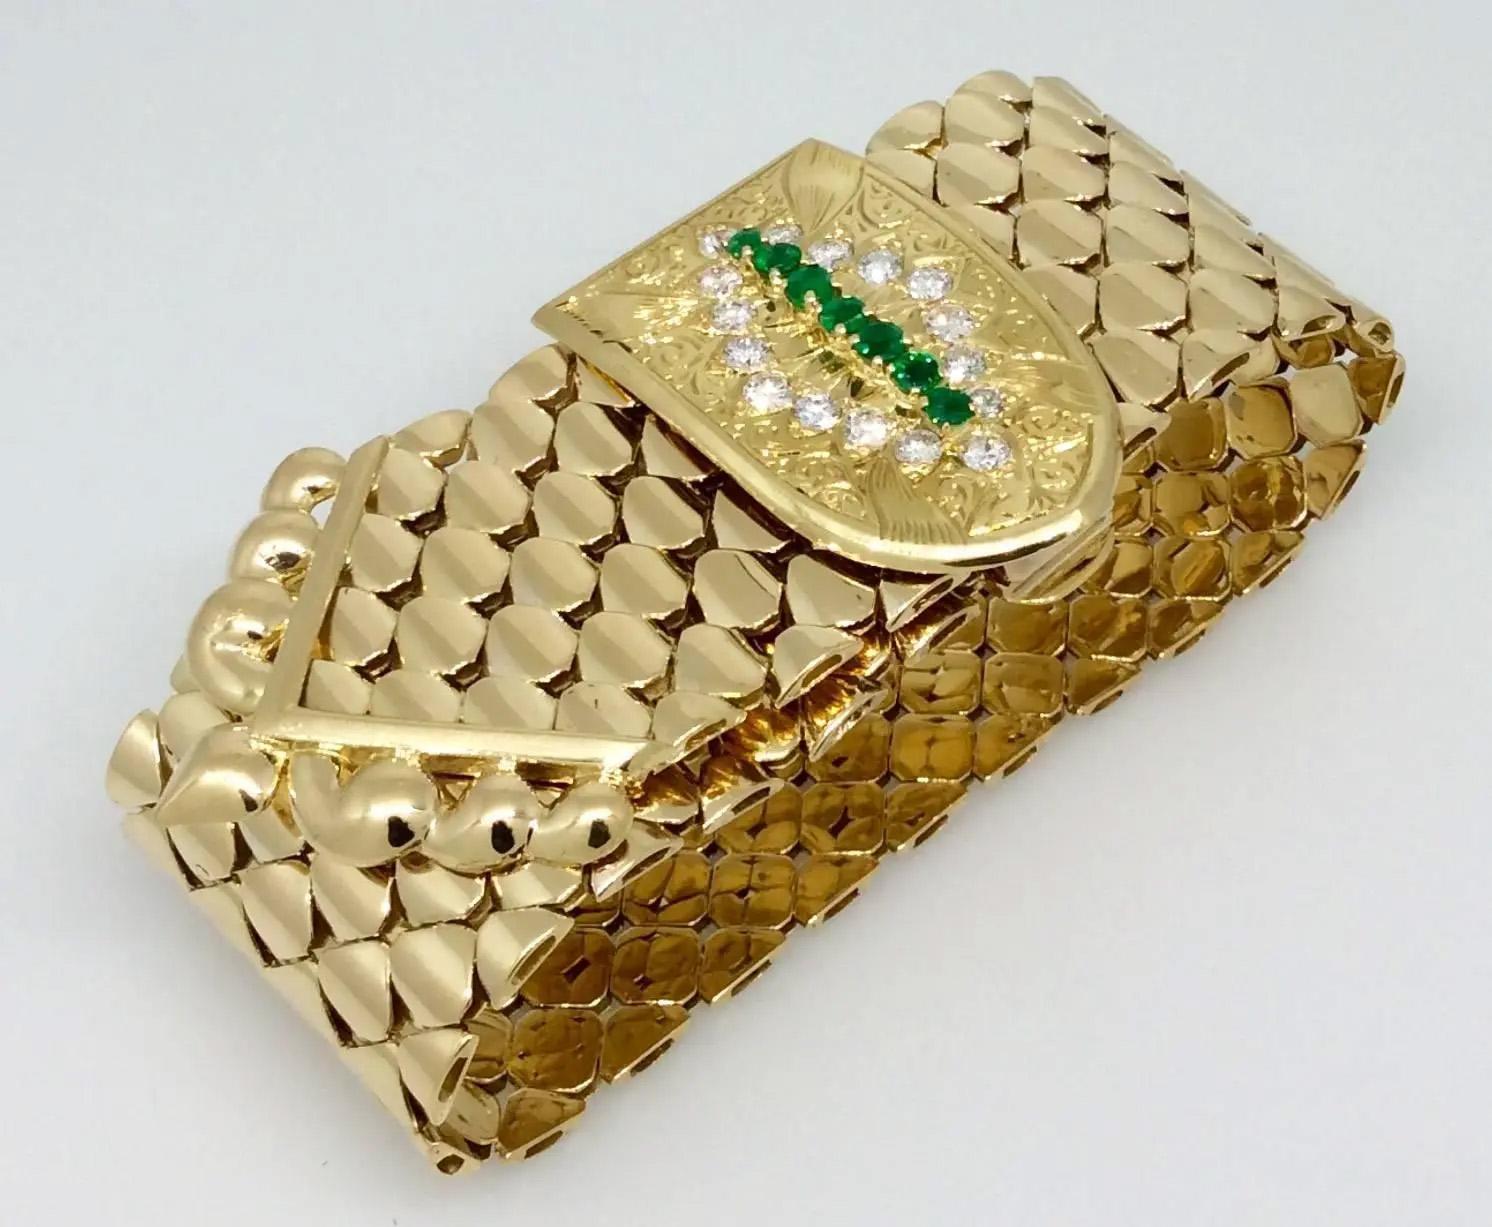 Kutchinsky circa 1960 Breites Smaragd-Diamant-Schnallenarmband aus 18k Gelbgold

Kutchinsky breites Schnallenarmband mit 16 runden Brillanten und 7 Smaragden im Rundschliff, gefasst in 18k Gelbgold mit graviertem Hintergrund. Das Armband hat flache,